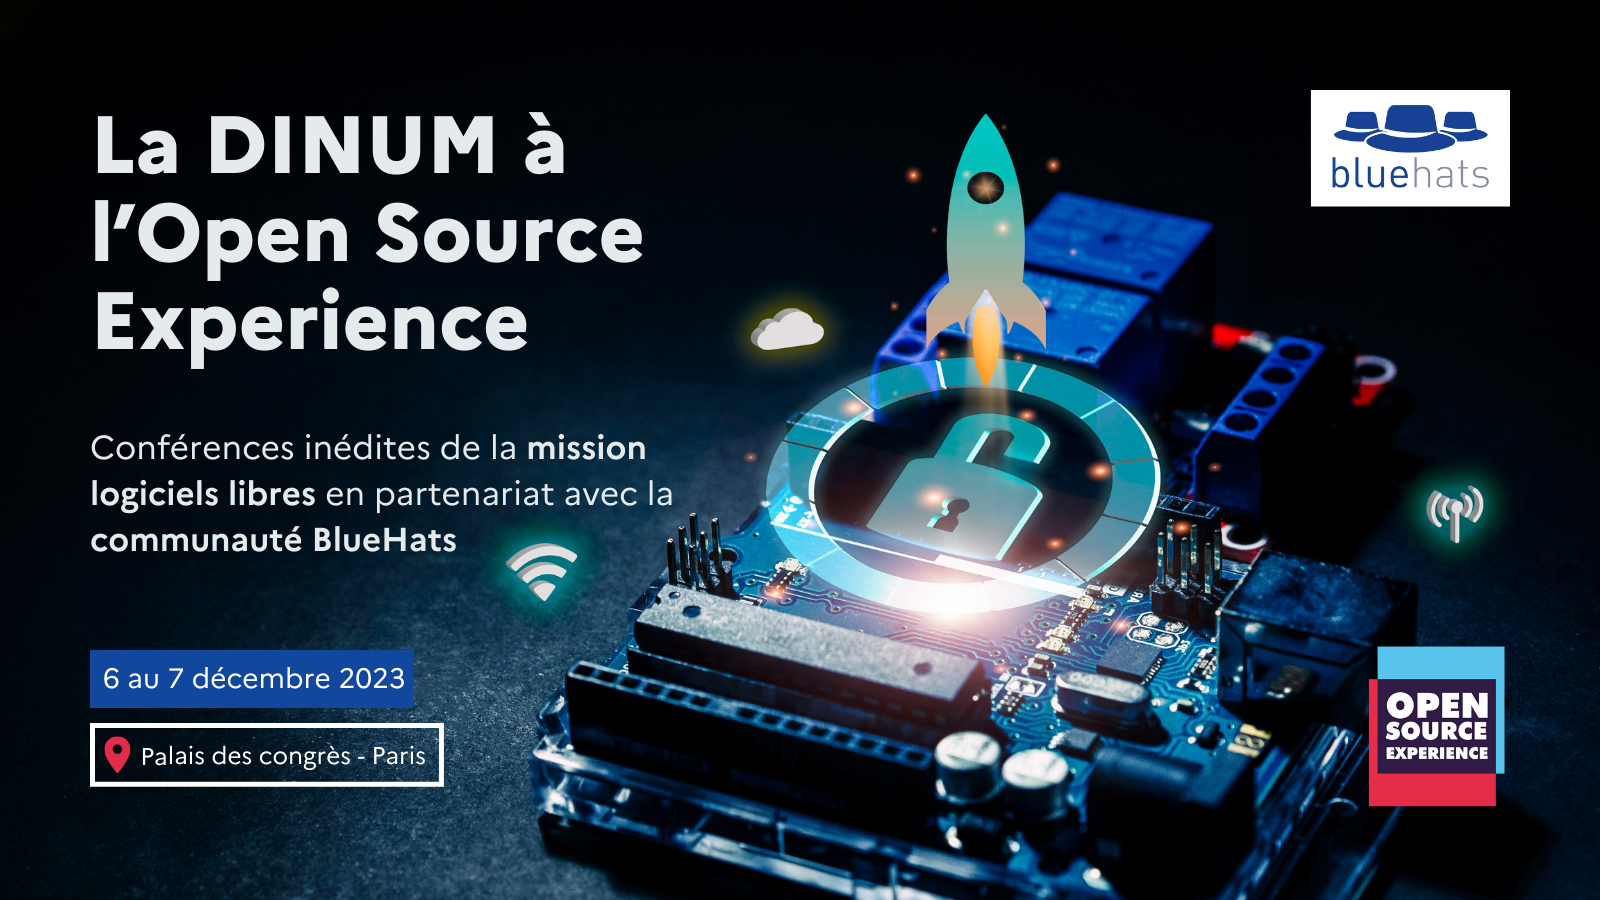 La DINUM à l'Open Source Expérience Conférences inédites de la mission logiciels libres en partenariat avec la communauté BlueHats 6 au 7 décembre 2023 Palais des congrès - Paris